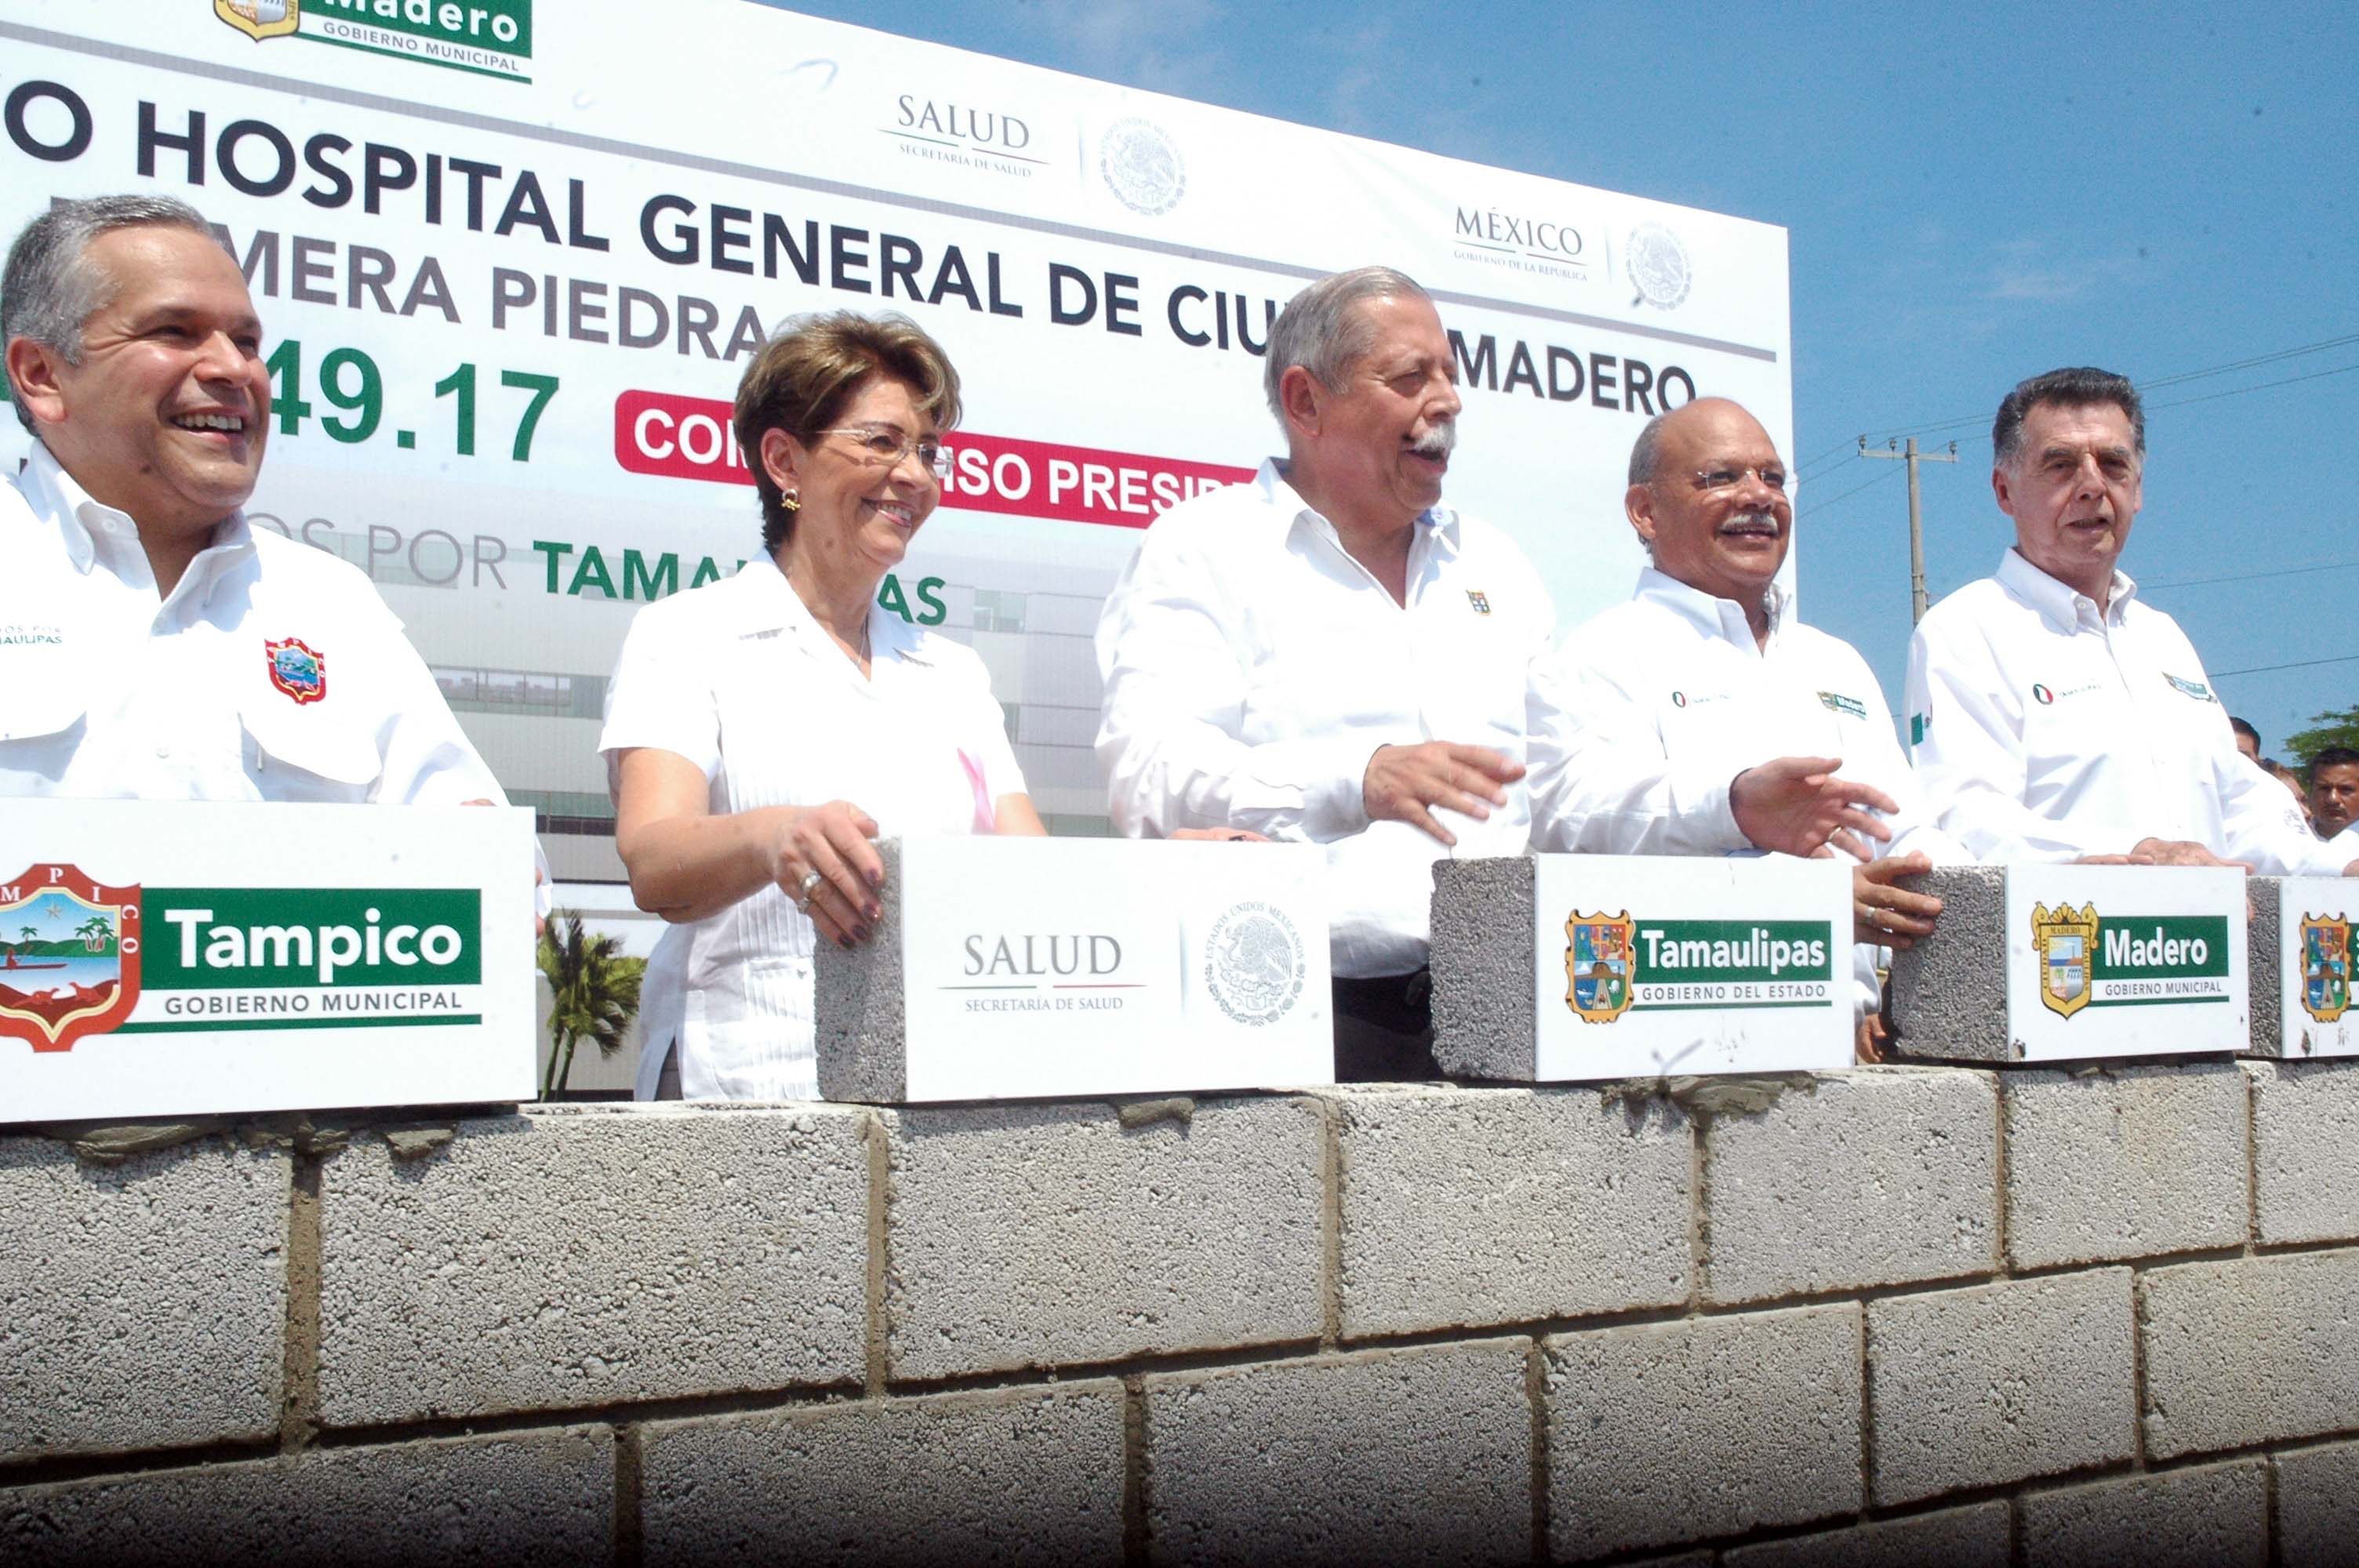 Acompañada por el gobernador de Tamaulipas, Egidio Torre Cantú, la doctora Mercedes Juan colocó la primera piedra con lo que se da inicio a la construcción del nuevo Hospital General de Ciudad Madero, Tamaulipas, que es uno de los tres centros hospitalarios que forman parte de los compromisos presidenciales.